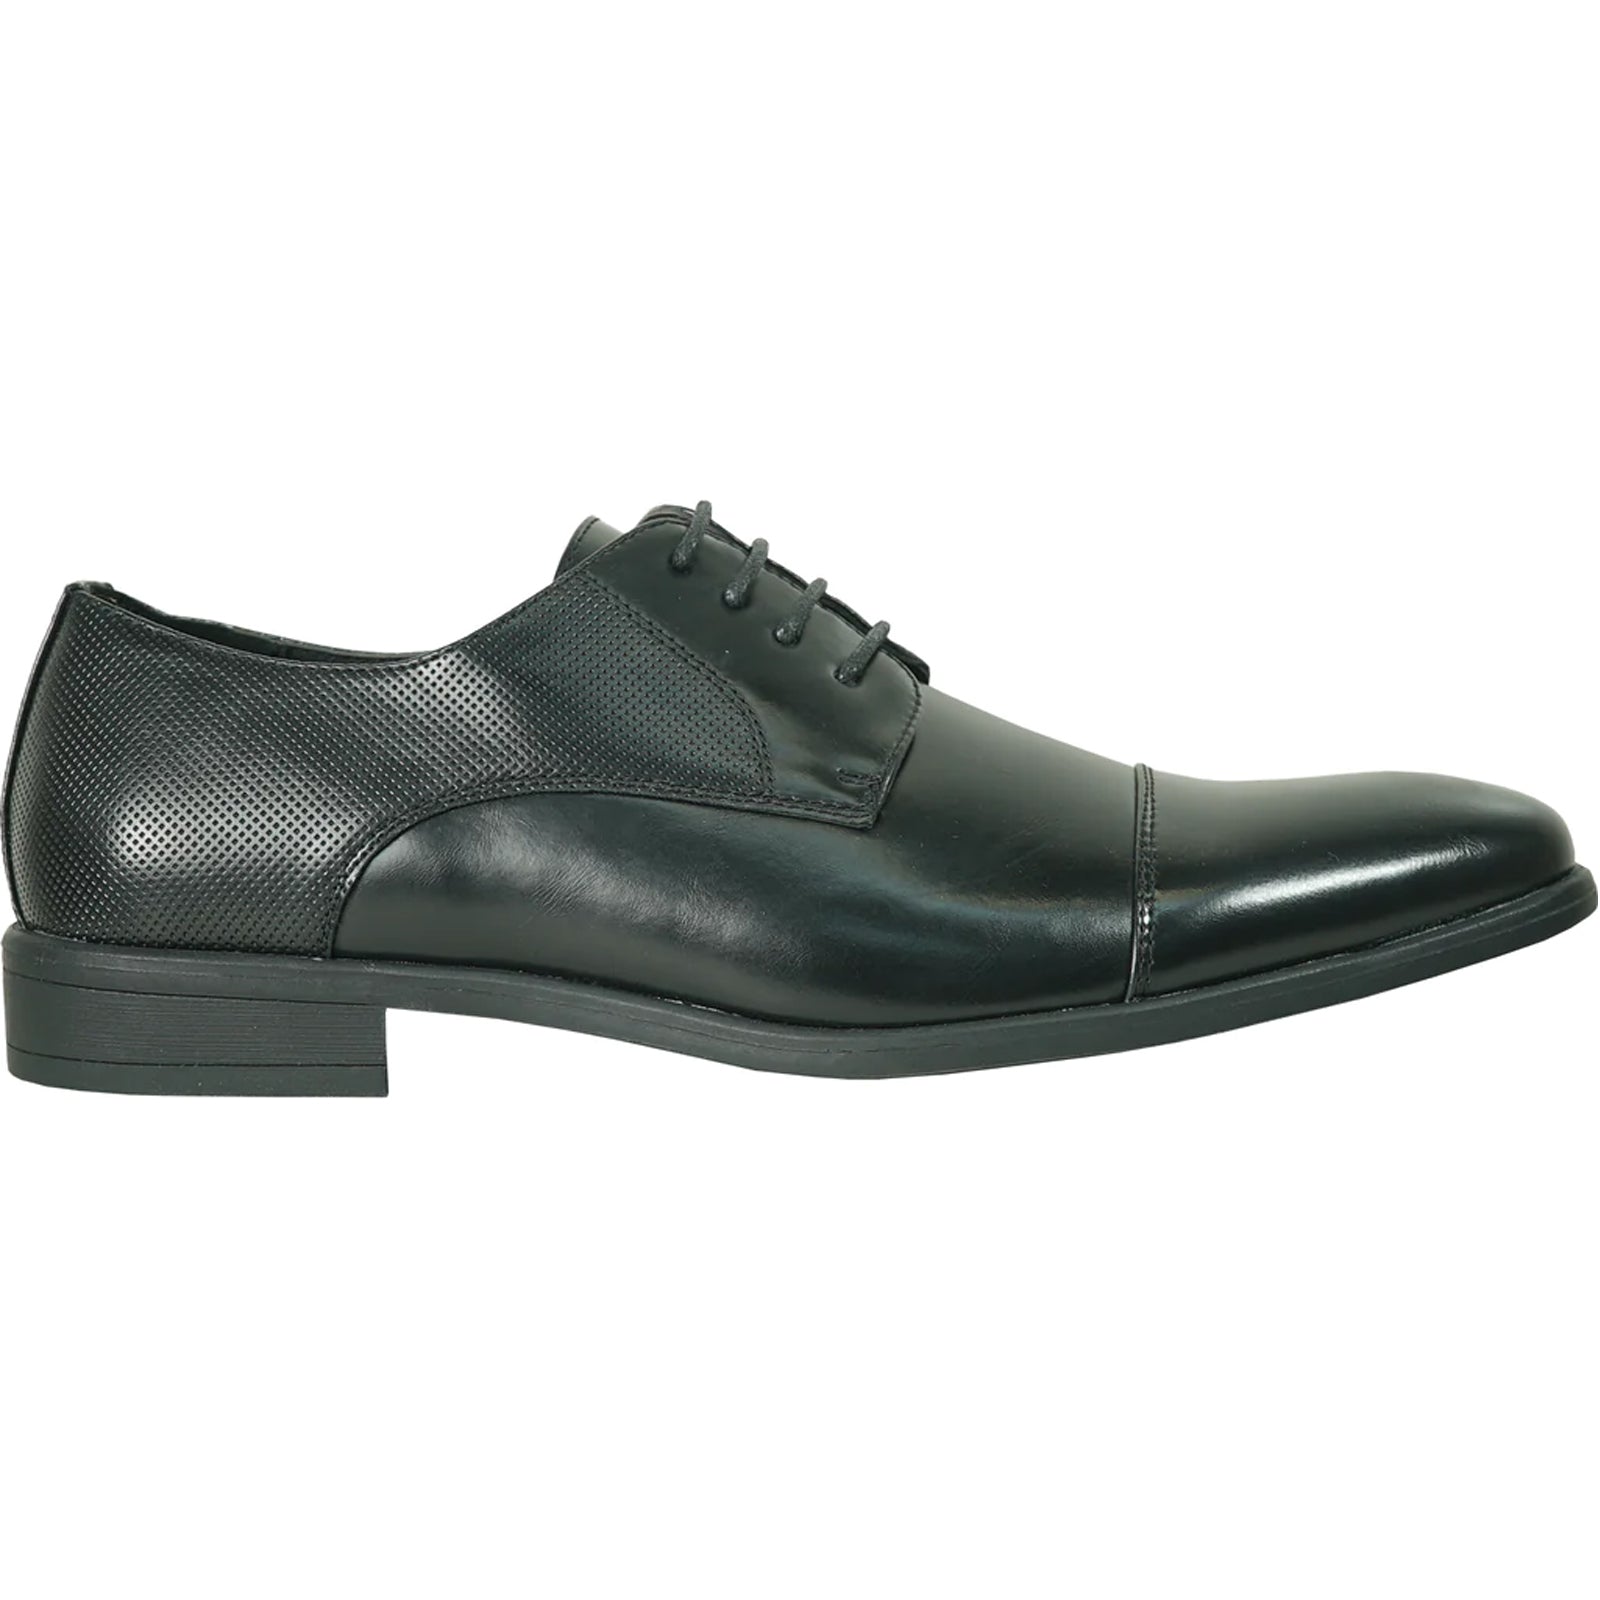 "Black Antique Cap Toe Oxford Men's Dress Shoe - Lace Up Style"